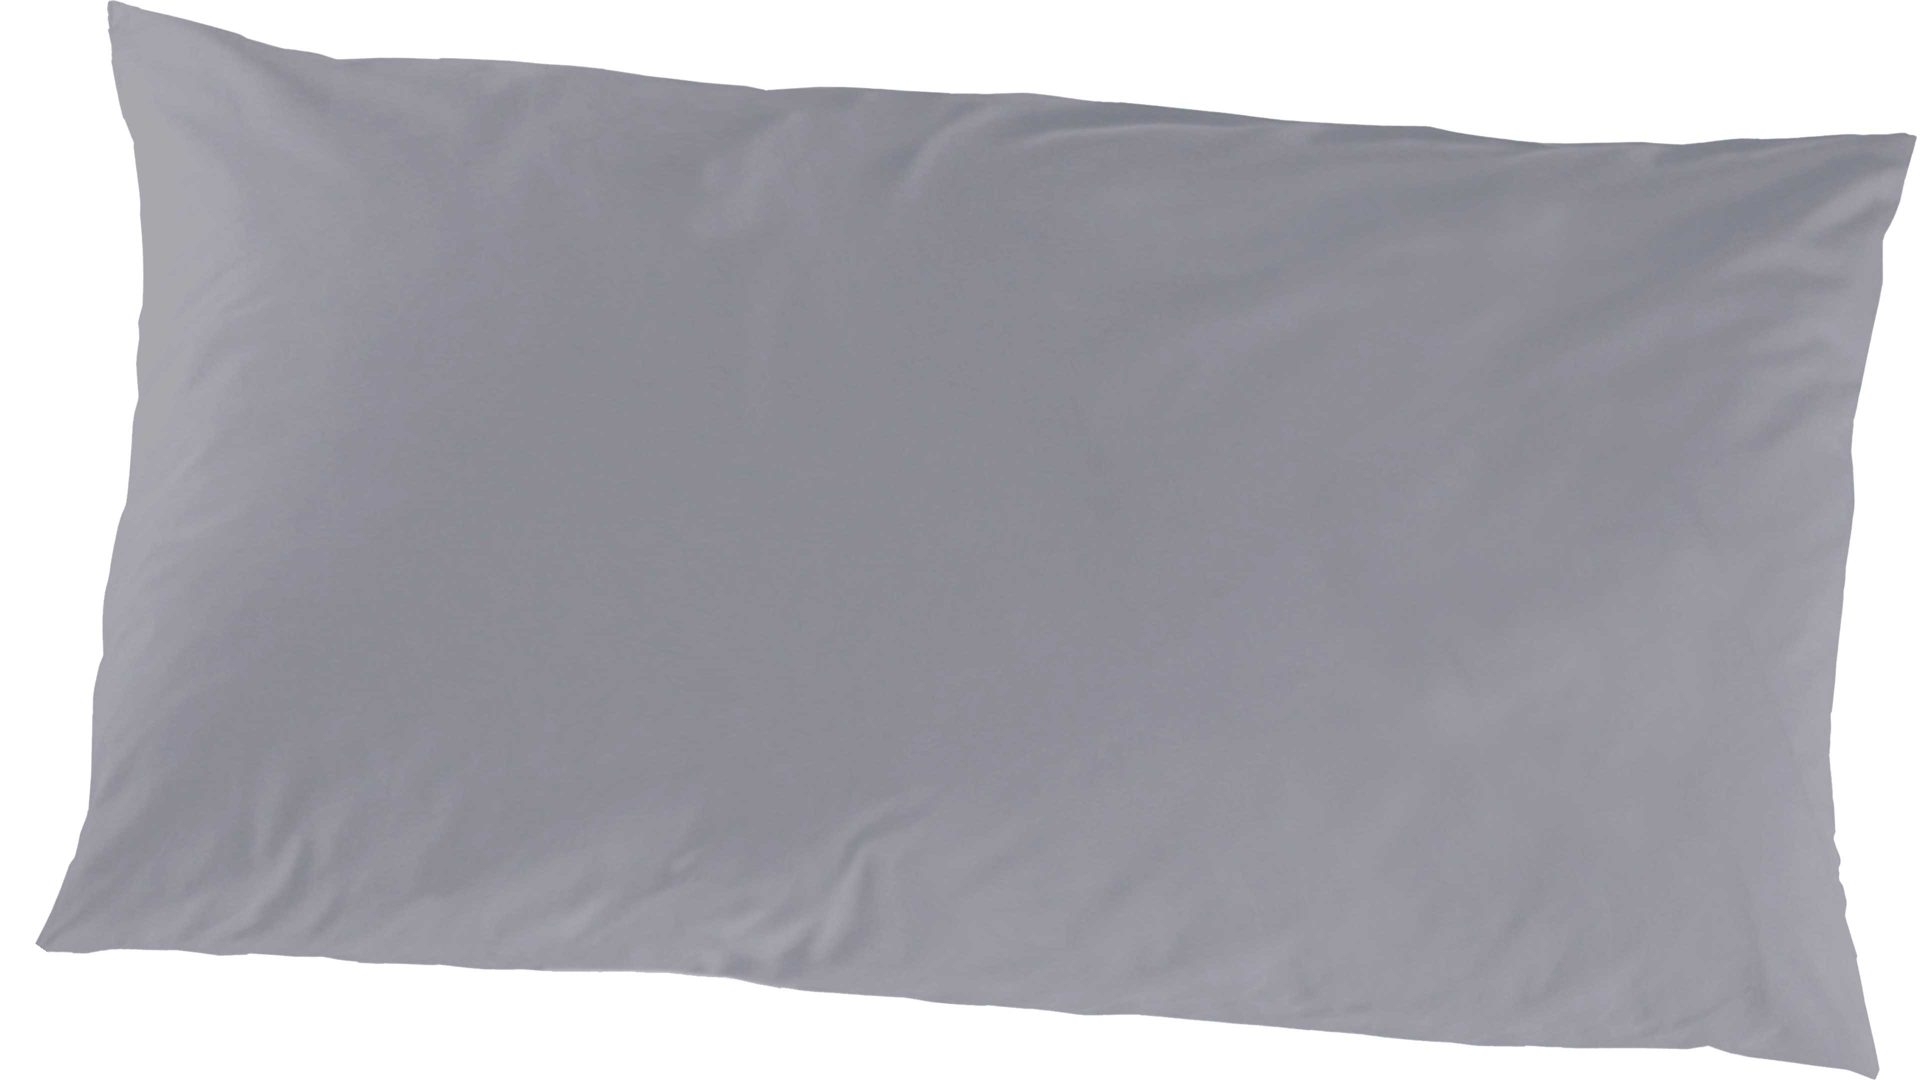 Kissenbezug /-hülle H.g. hahn haustextilien aus Stoff in Dunkelgrau HAHN Luxus-Satin-Kopfkissenbezug Sempre graphitfarbener Baumwollsatin - ca. 40 x 80 cm